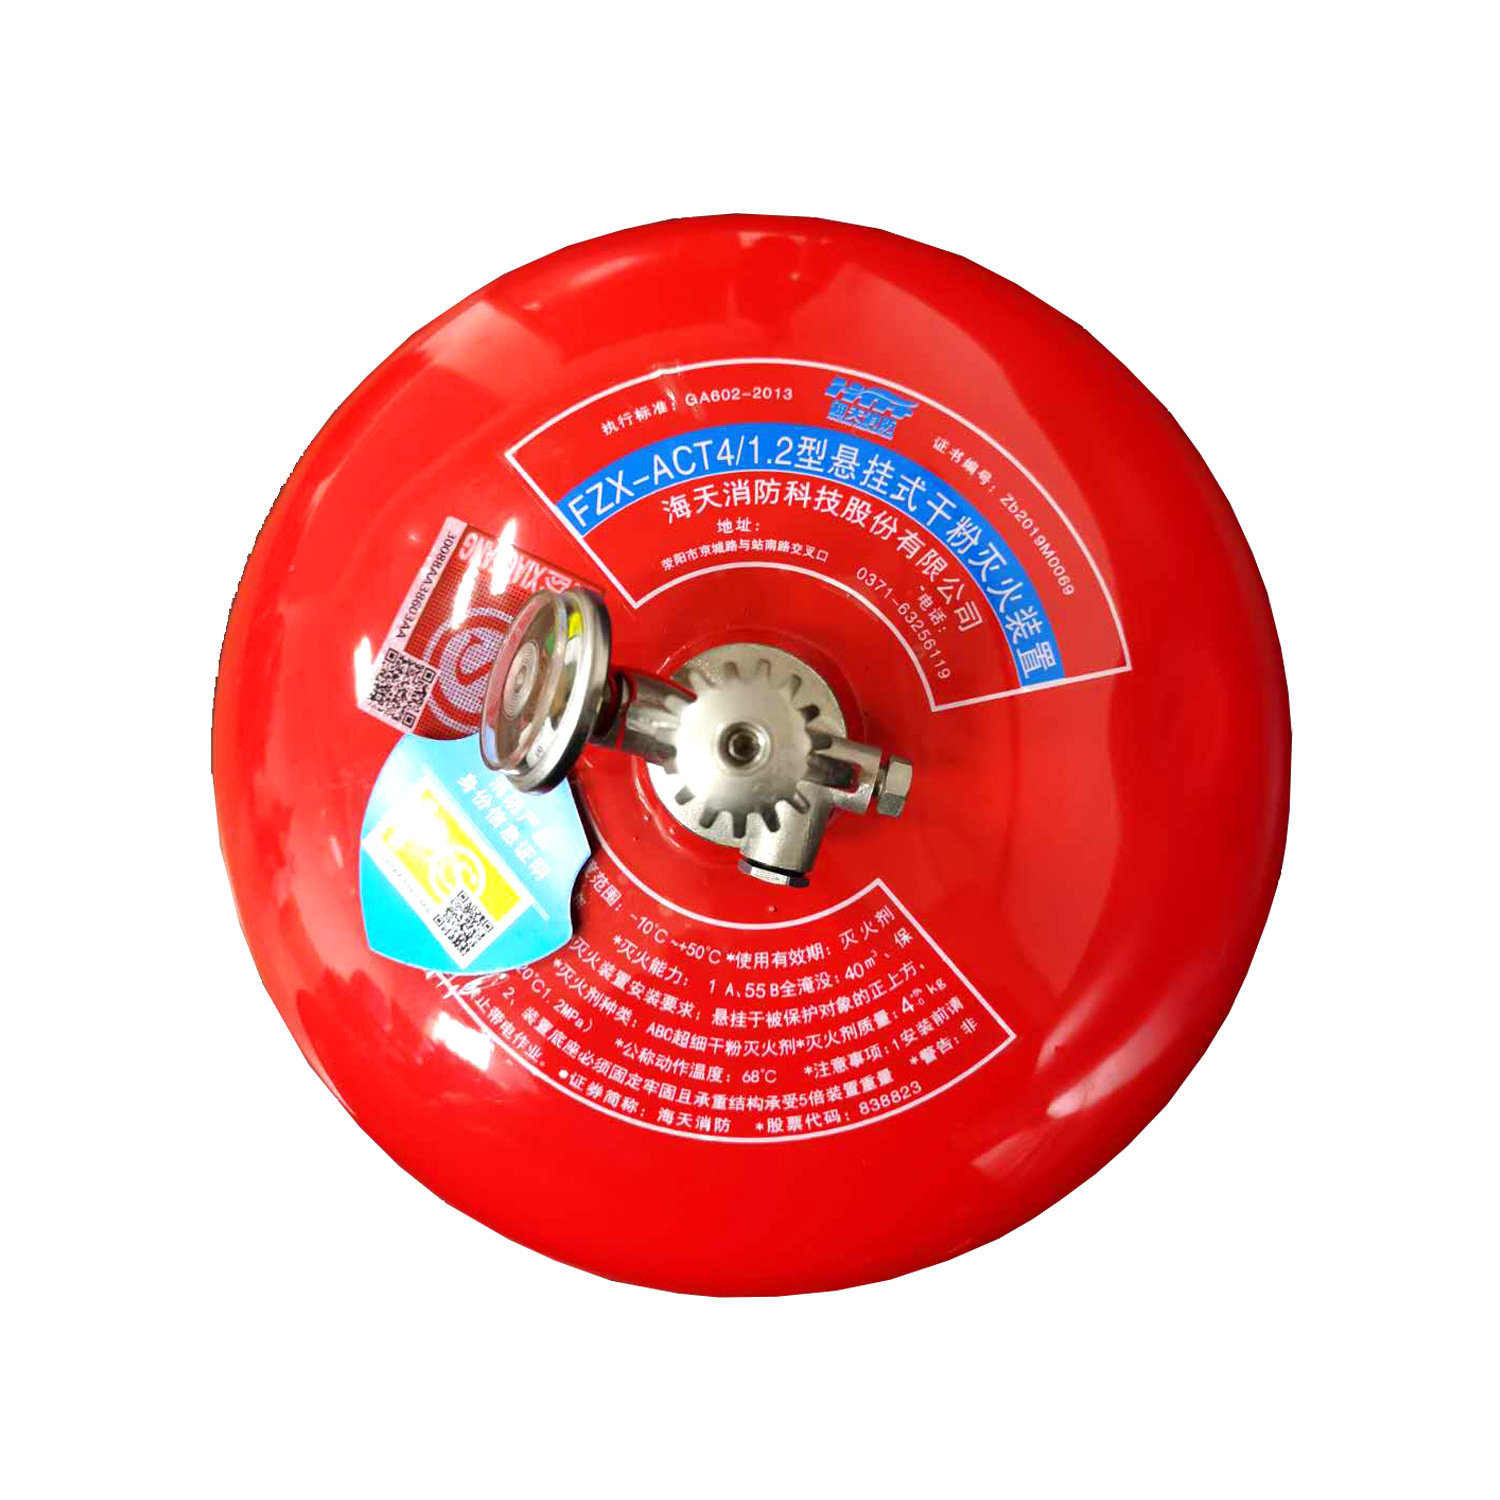 海天消防 悬挂式超细干粉灭火器4kg 温感自爆灭火吊球装置4公斤|ru